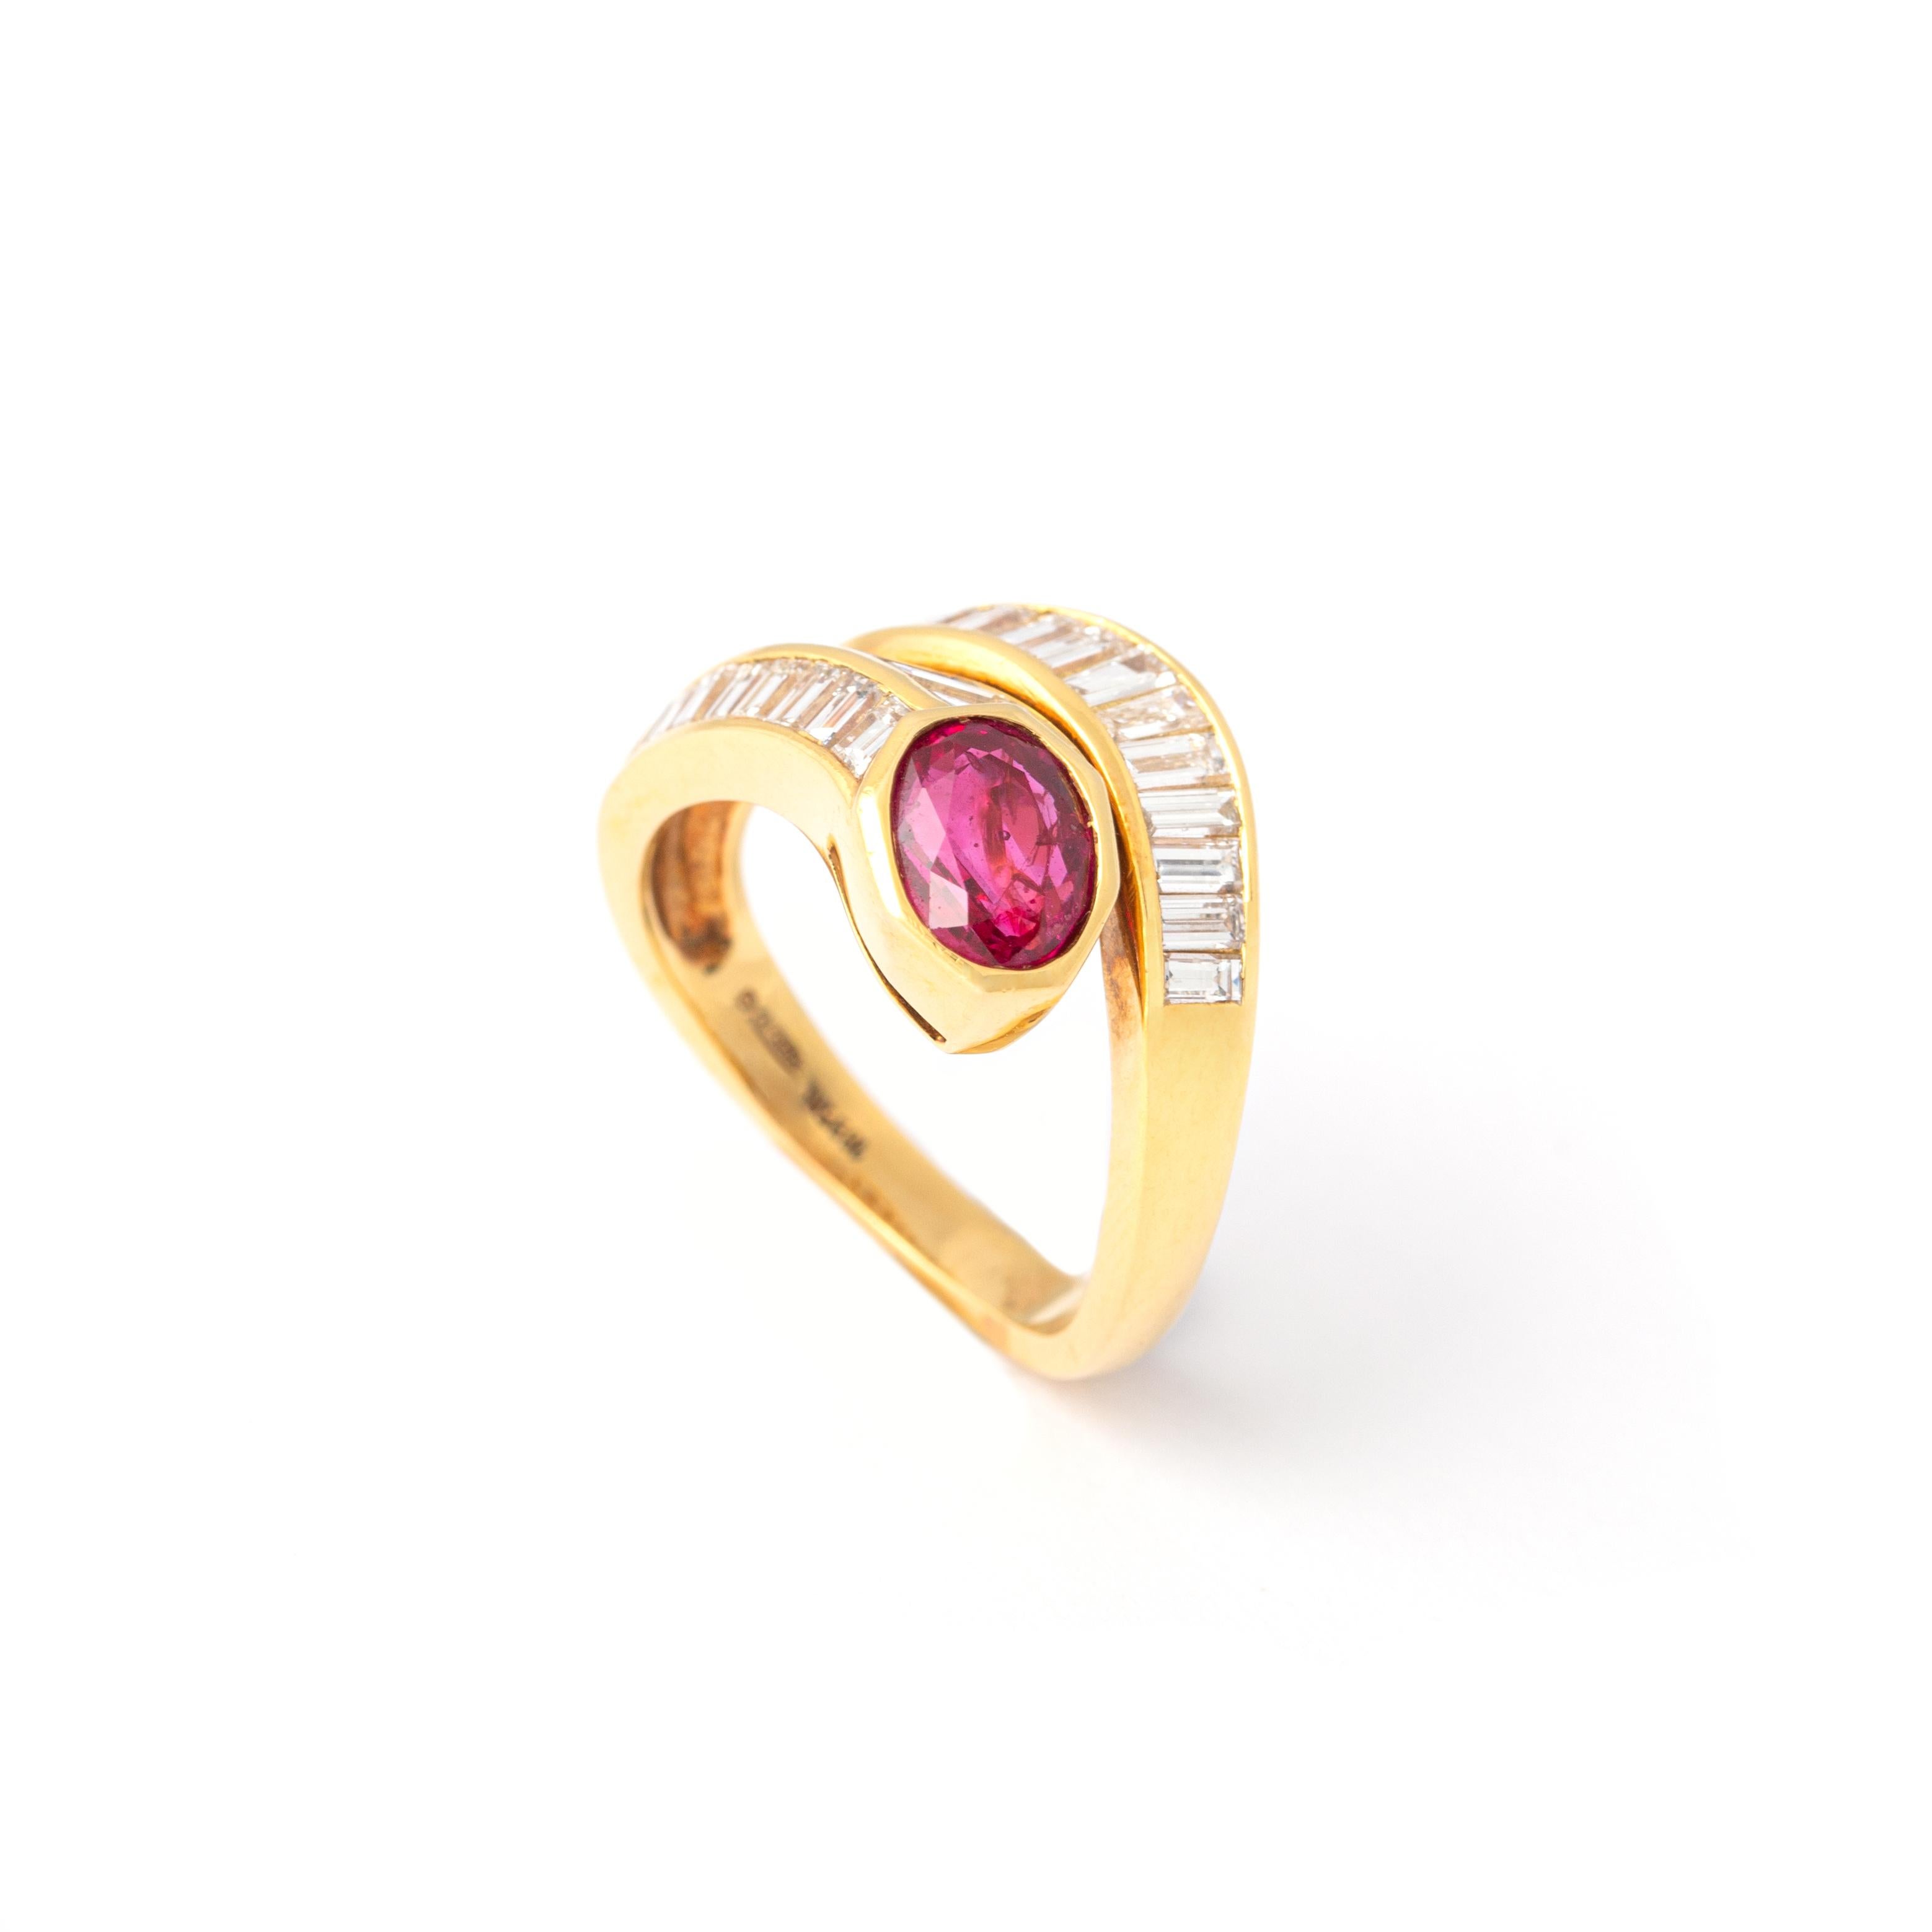 18 Karat Gelbgold Ring mit Rubin und Diamant
Zentriert von einem ovalen Rubin von 1,49 Karat und einem Diamanten von insgesamt 2,8 Karat, Farbe F und Reinheit VVS2.
Größe: 6,75
Gesamtbruttogewicht: 7.80 Gramm.

